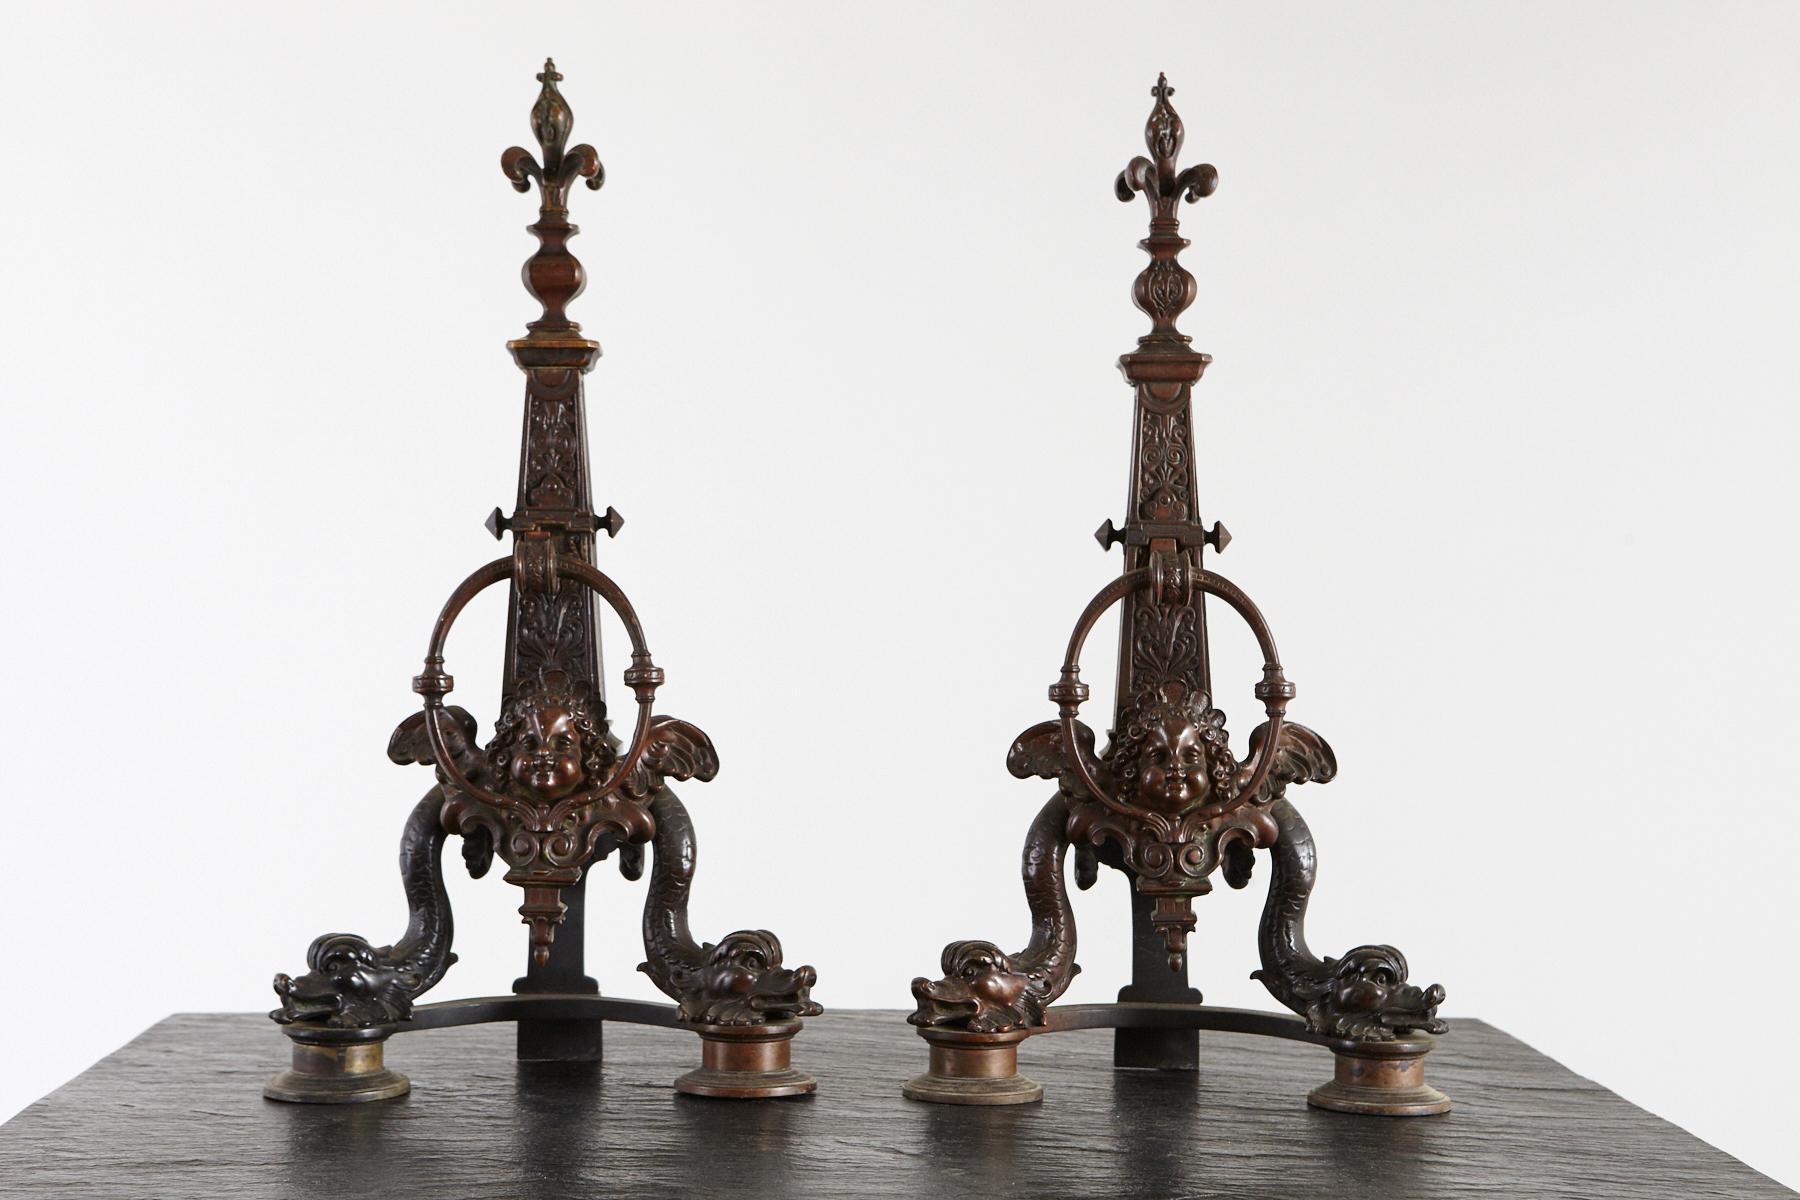 Beeindruckendes und wunderschön detailliertes Paar französischer Bronze-Chenets oder Feuerböcke aus dem späten 19. Jahrhundert, die Delphine und Putten darstellen. Ein Paar Fleur-de-Lys überragt die Obelisken.
Das Feuerböckepaar ist in sehr gutem